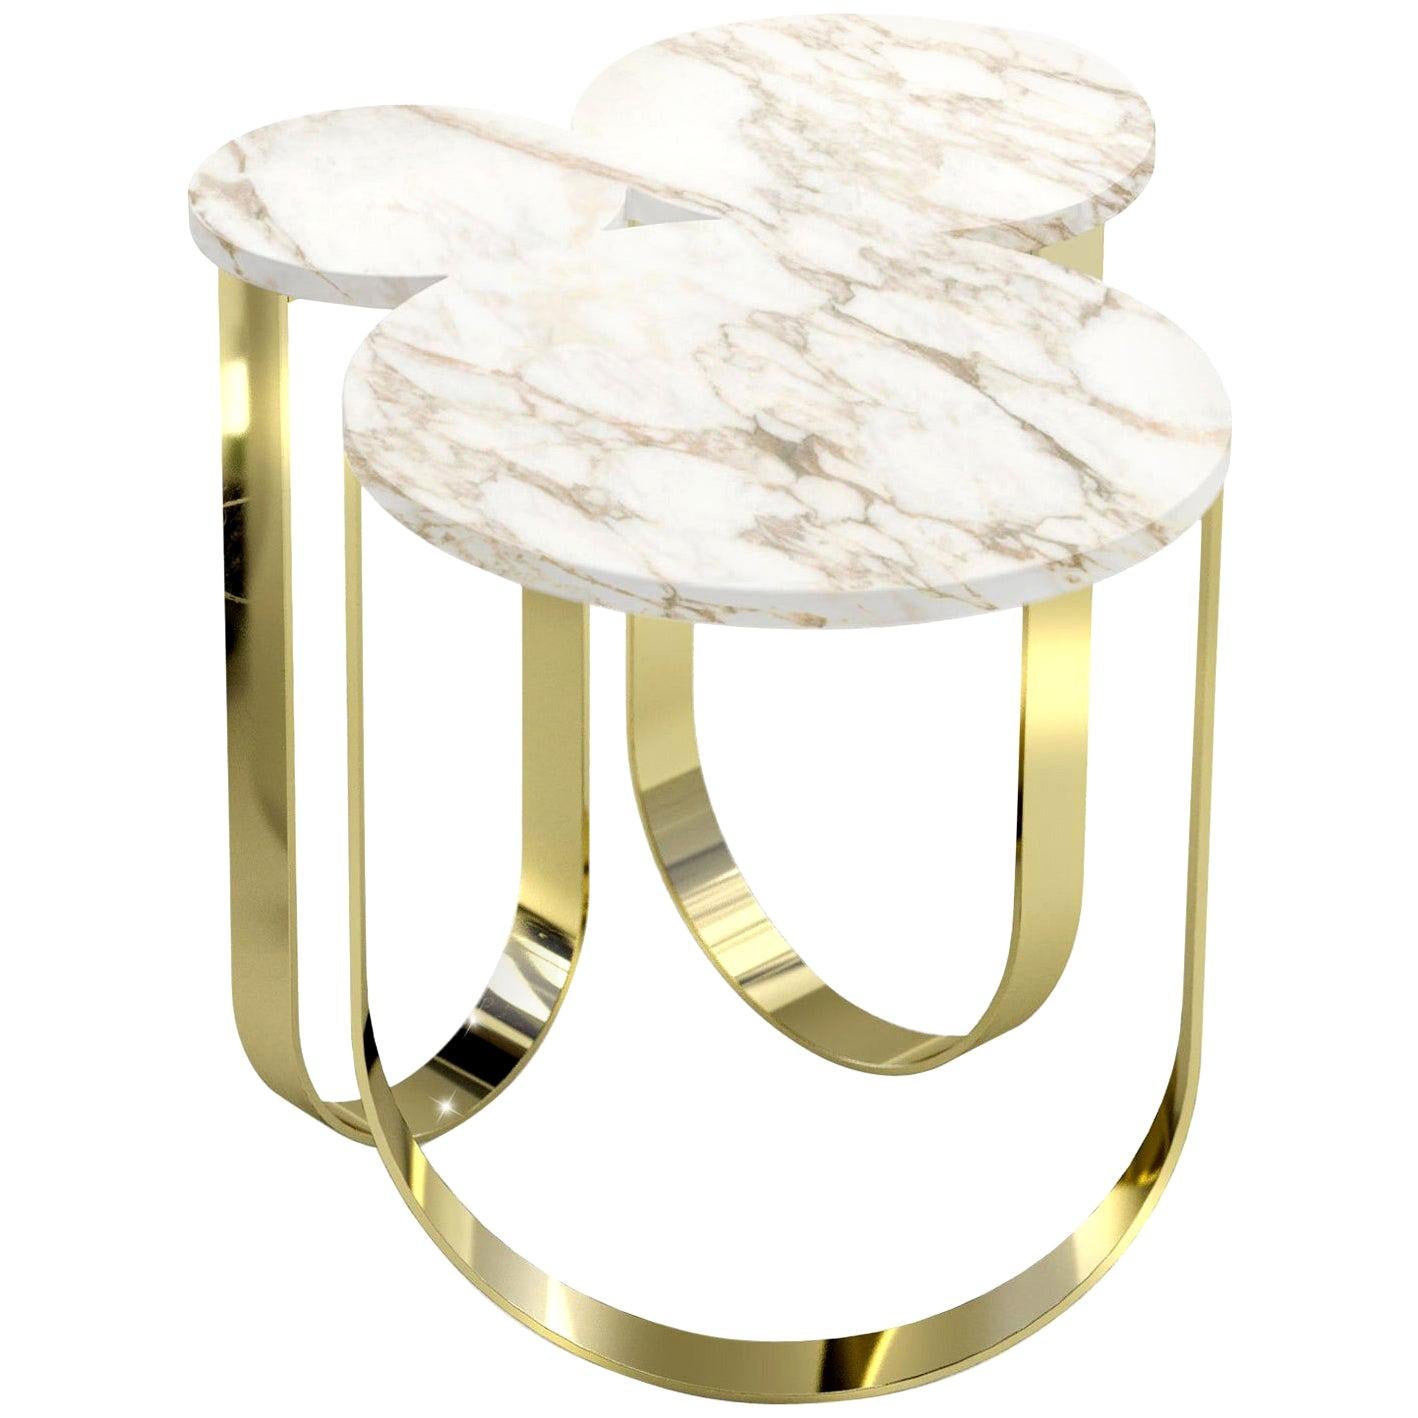 Table d'appoint de forme organique en marbre blanc et laiton poli, design de collection